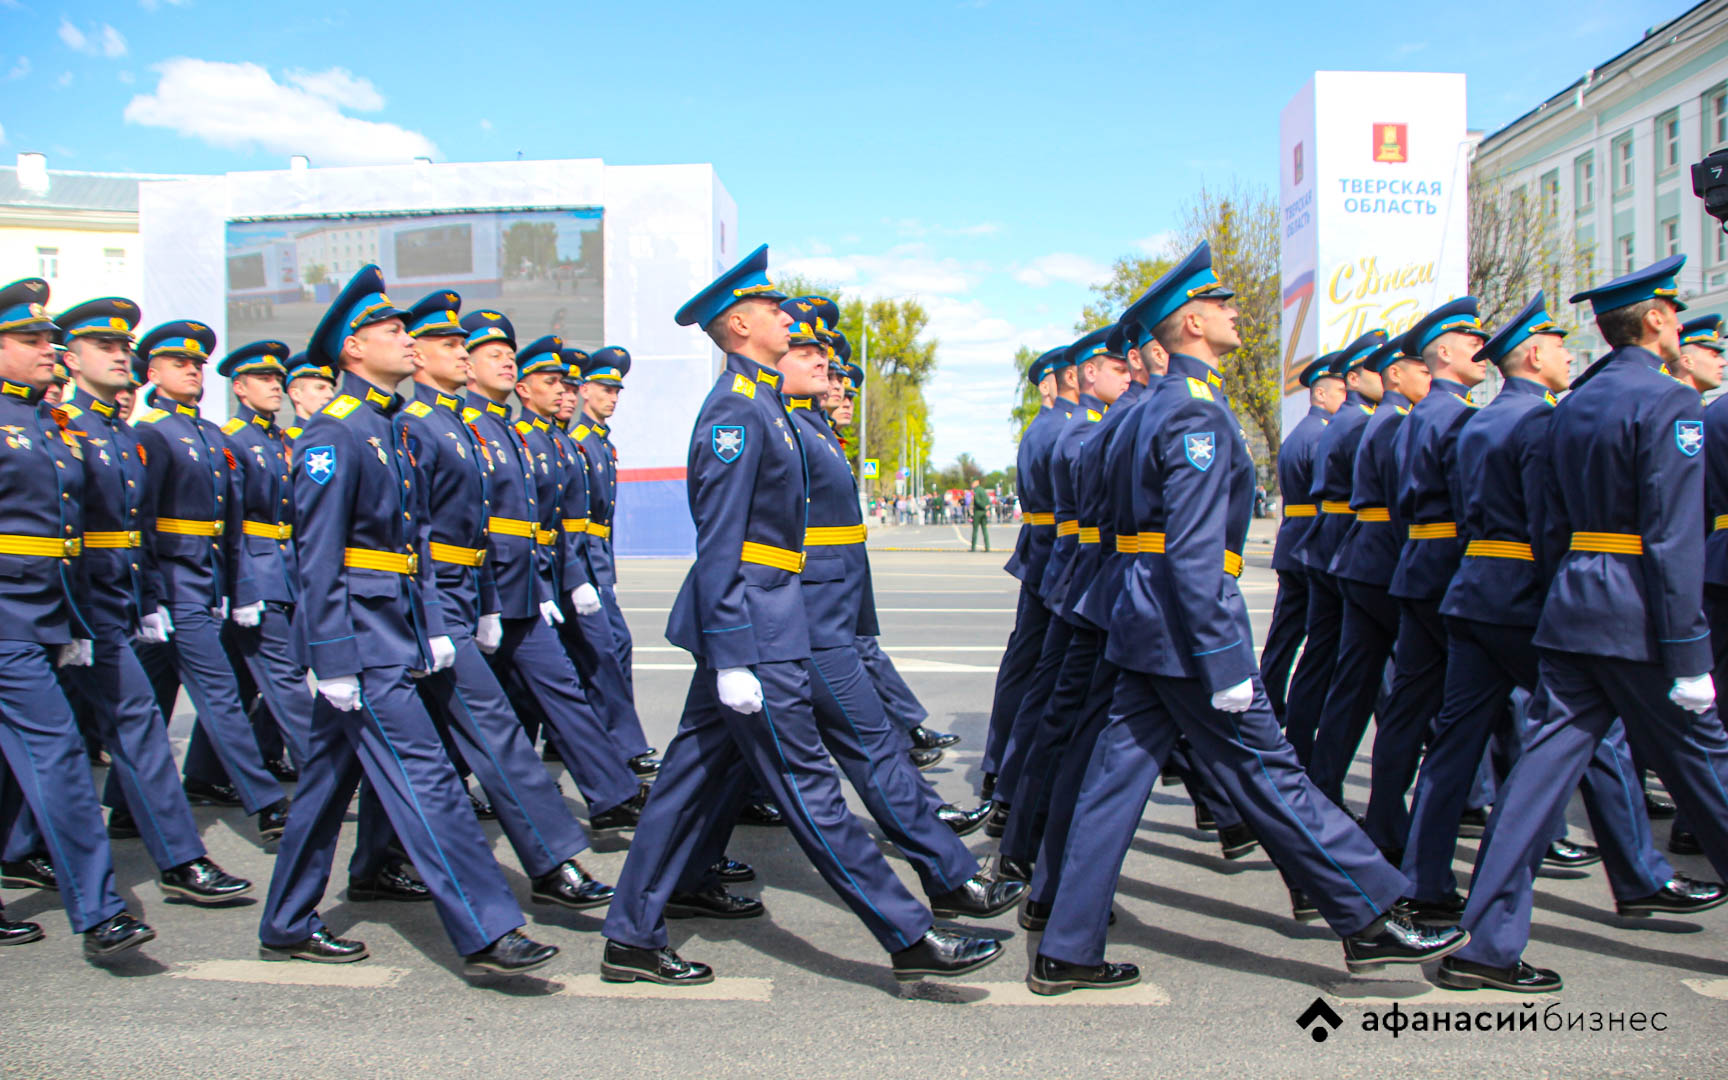 Военные парады пройдут в городах Тверской области